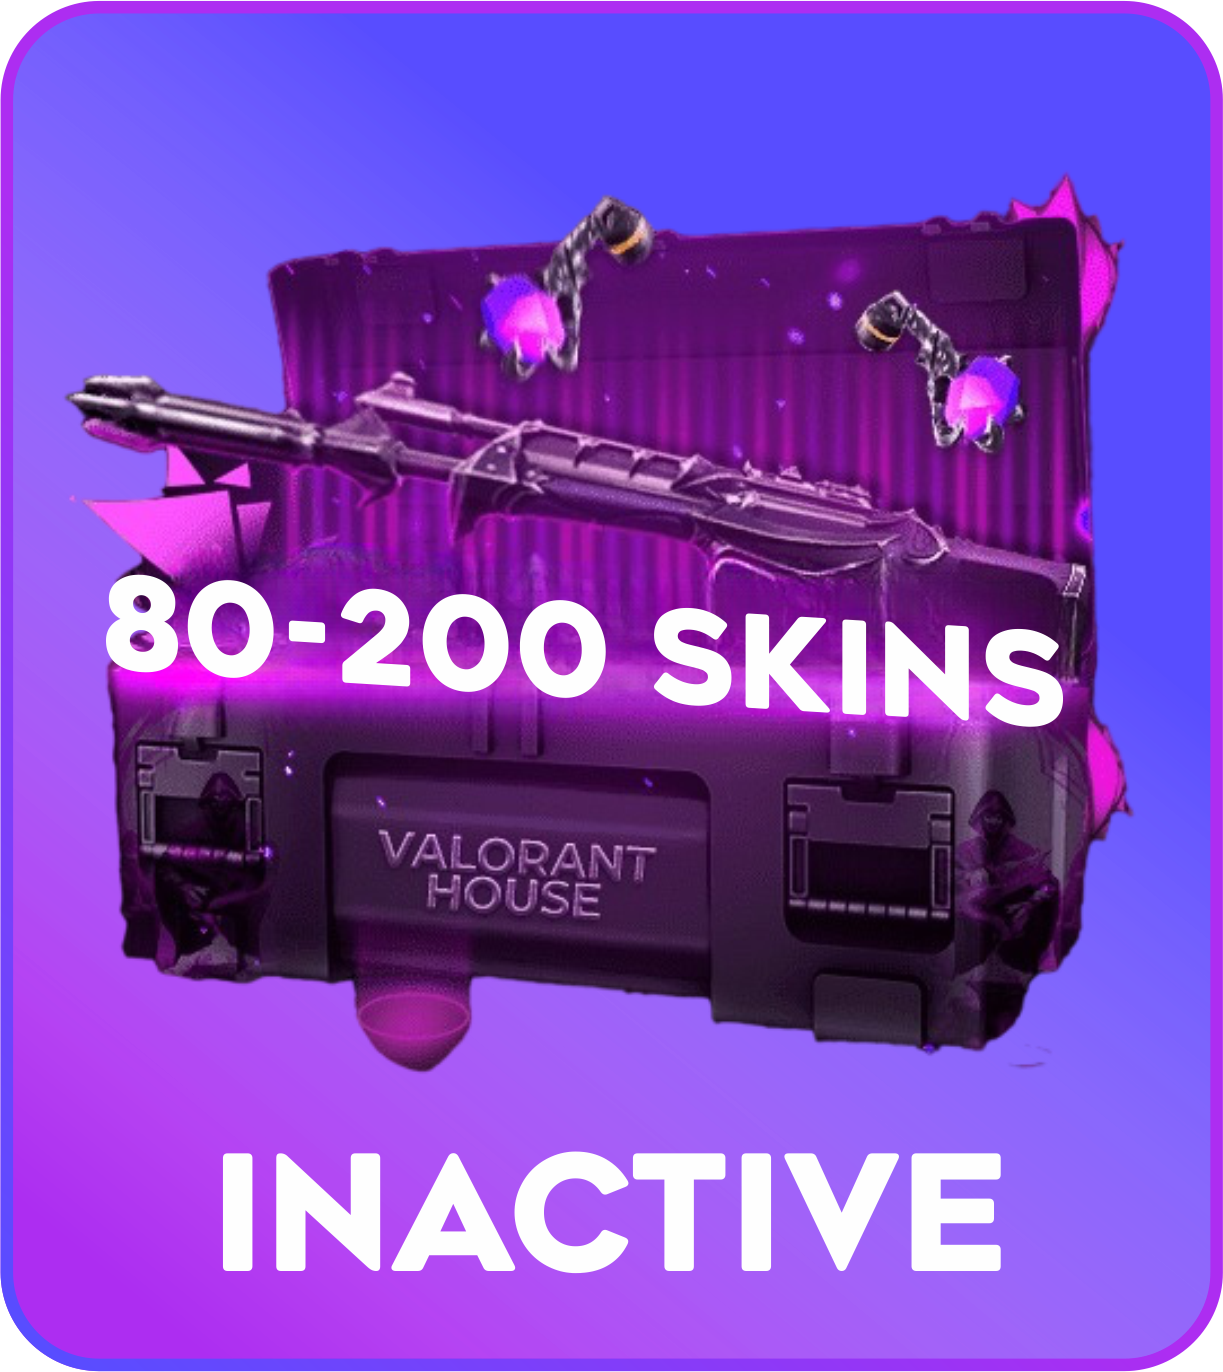 Inactive 80-200 skins Valorant Account